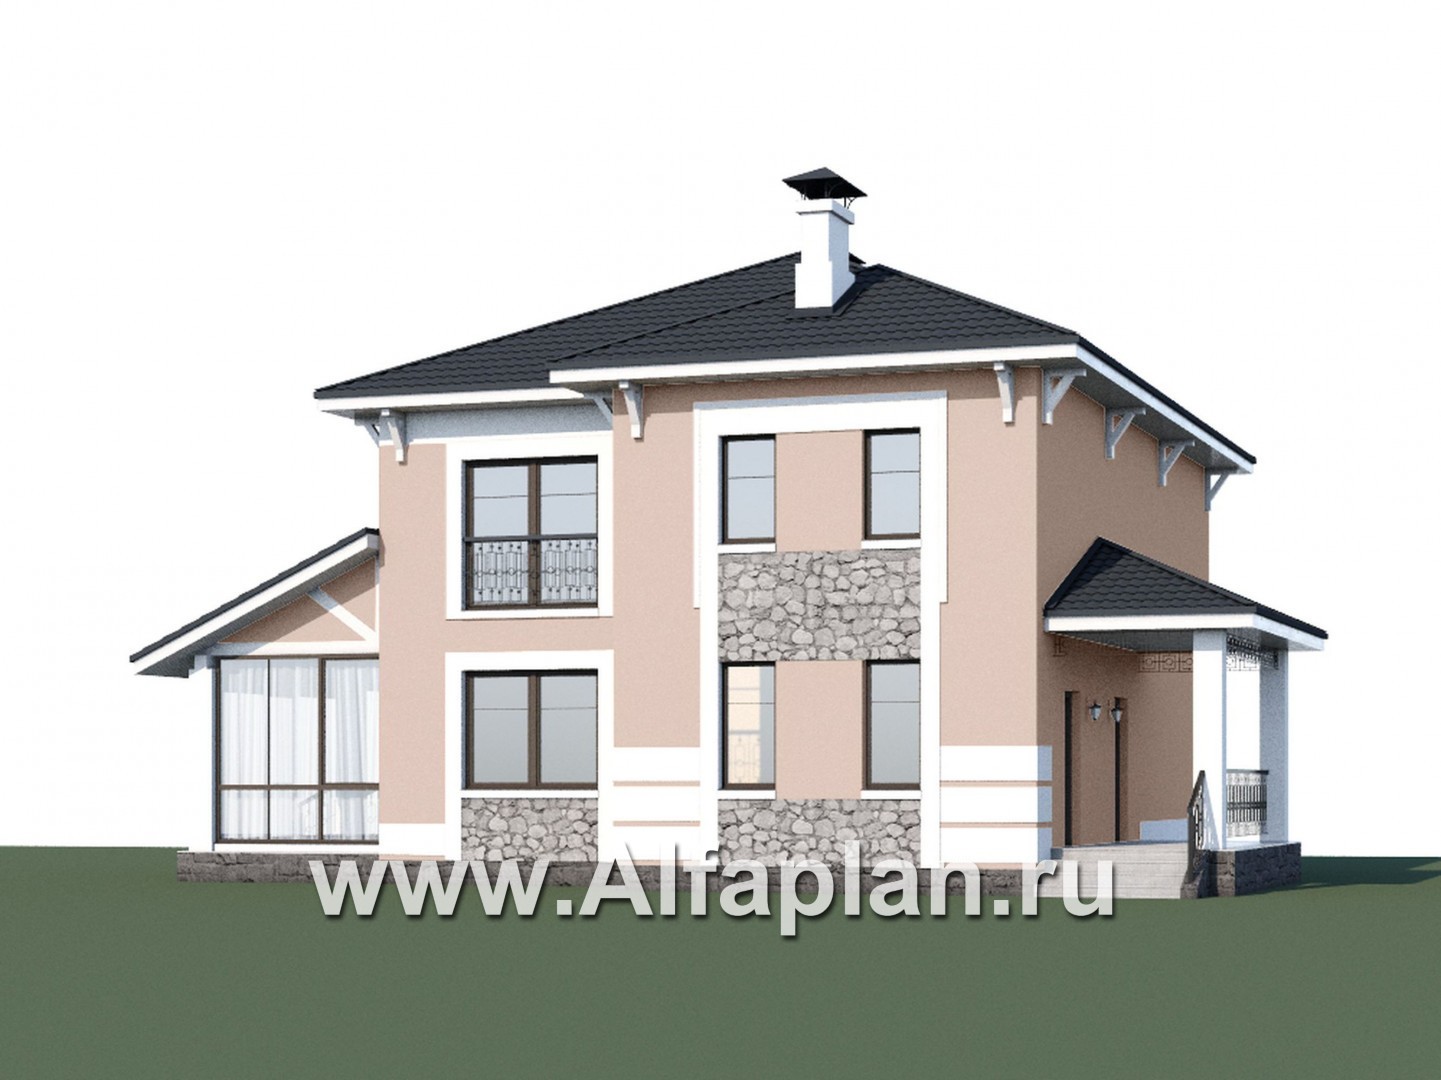 Проекты домов Альфаплан - «Счастье рядом» - двухэтажный дом с комфортной планировкой - дополнительное изображение №1